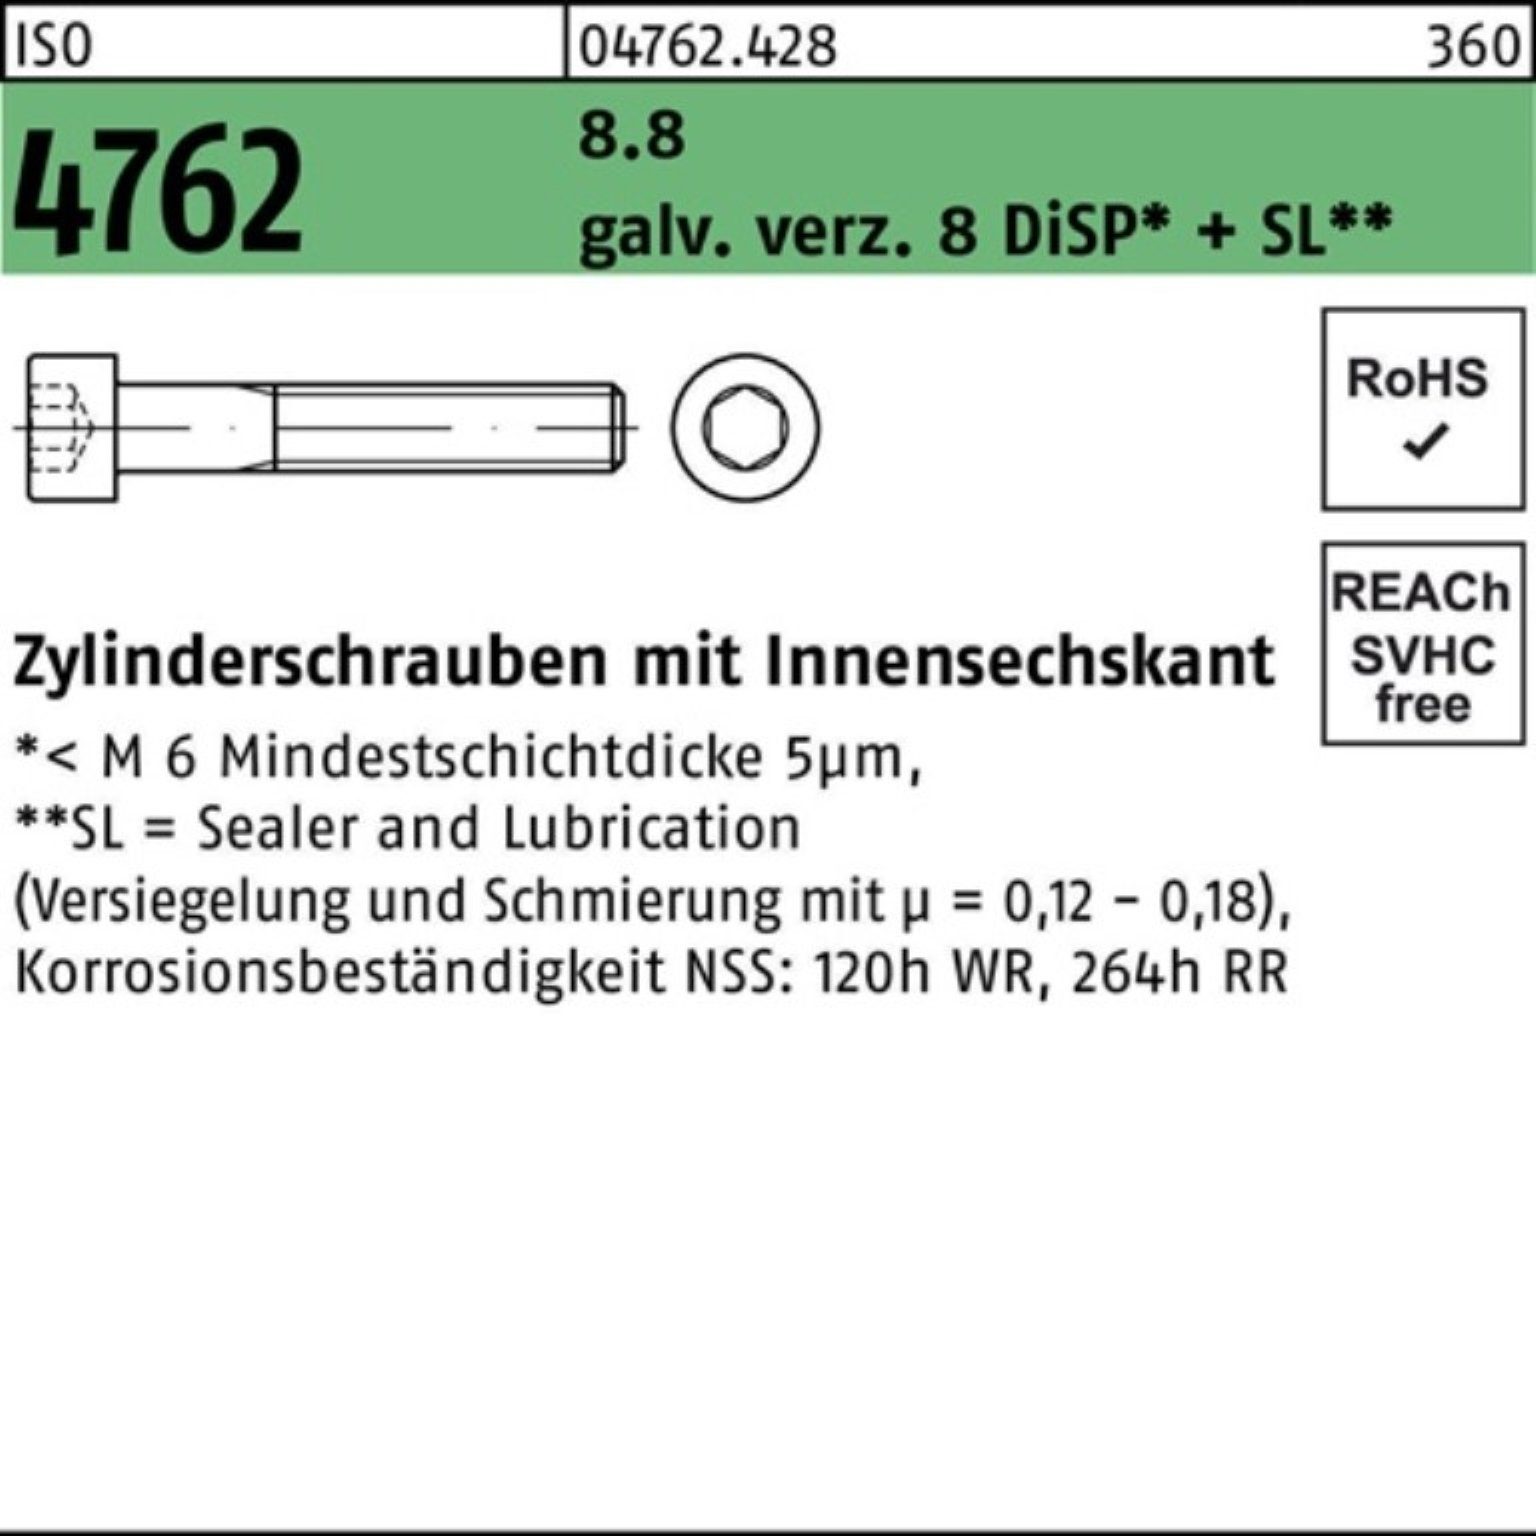 Reyher Zylinderschraube 200er Pack Innen-6kt 8.8 galv.verz. M5x35 8 Zylinderschraube 4762 ISO